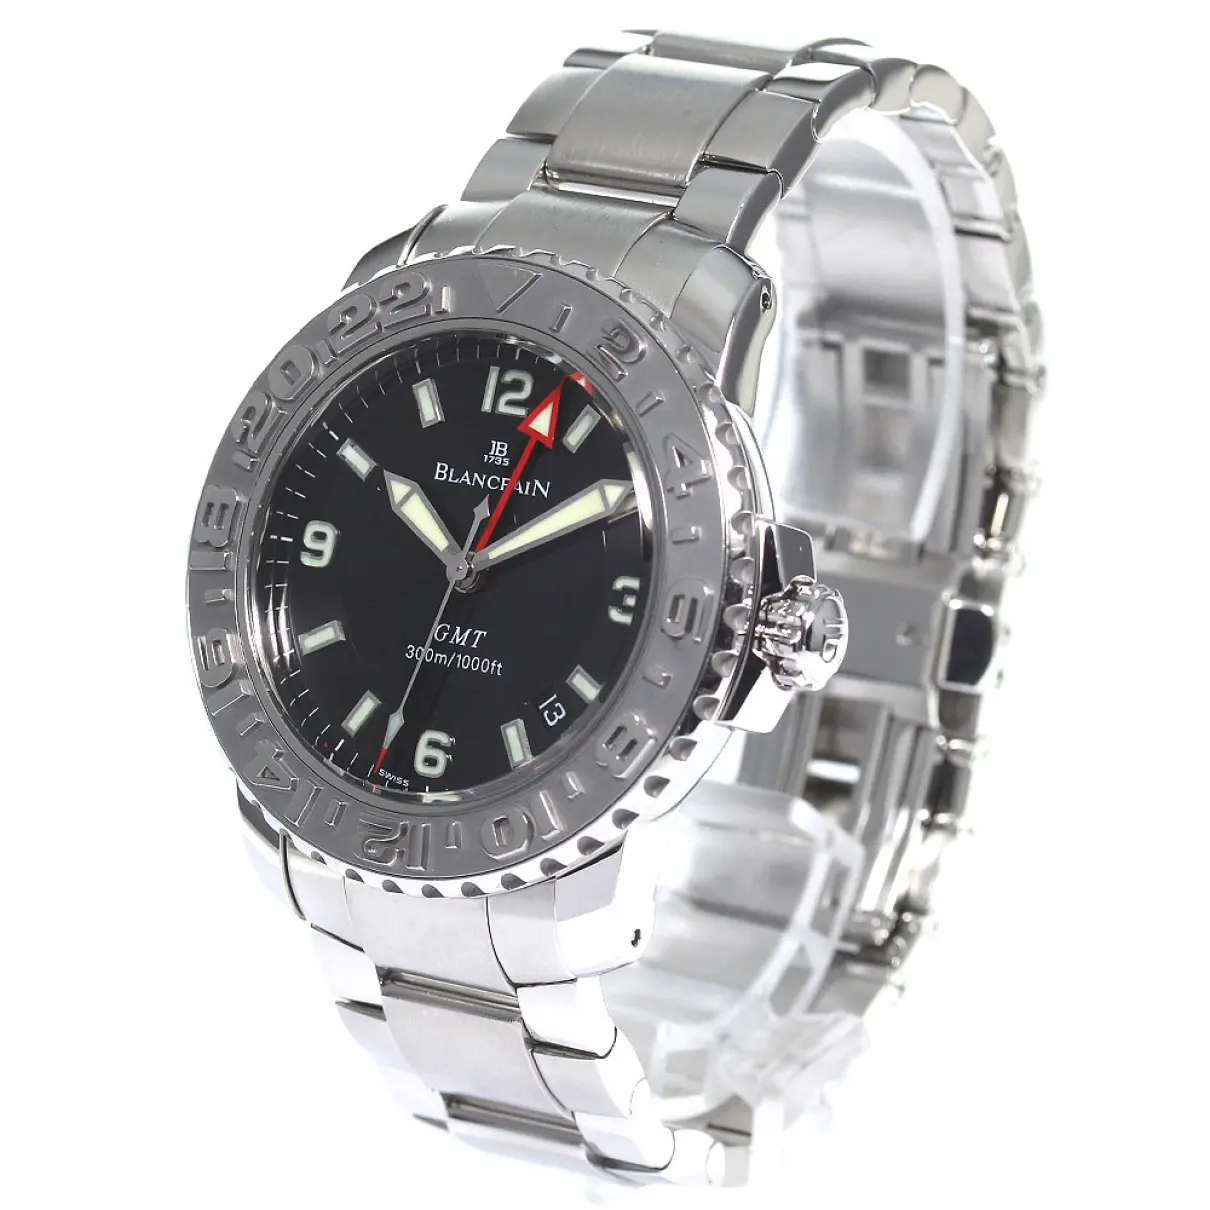 Buy Blancpain Watch online